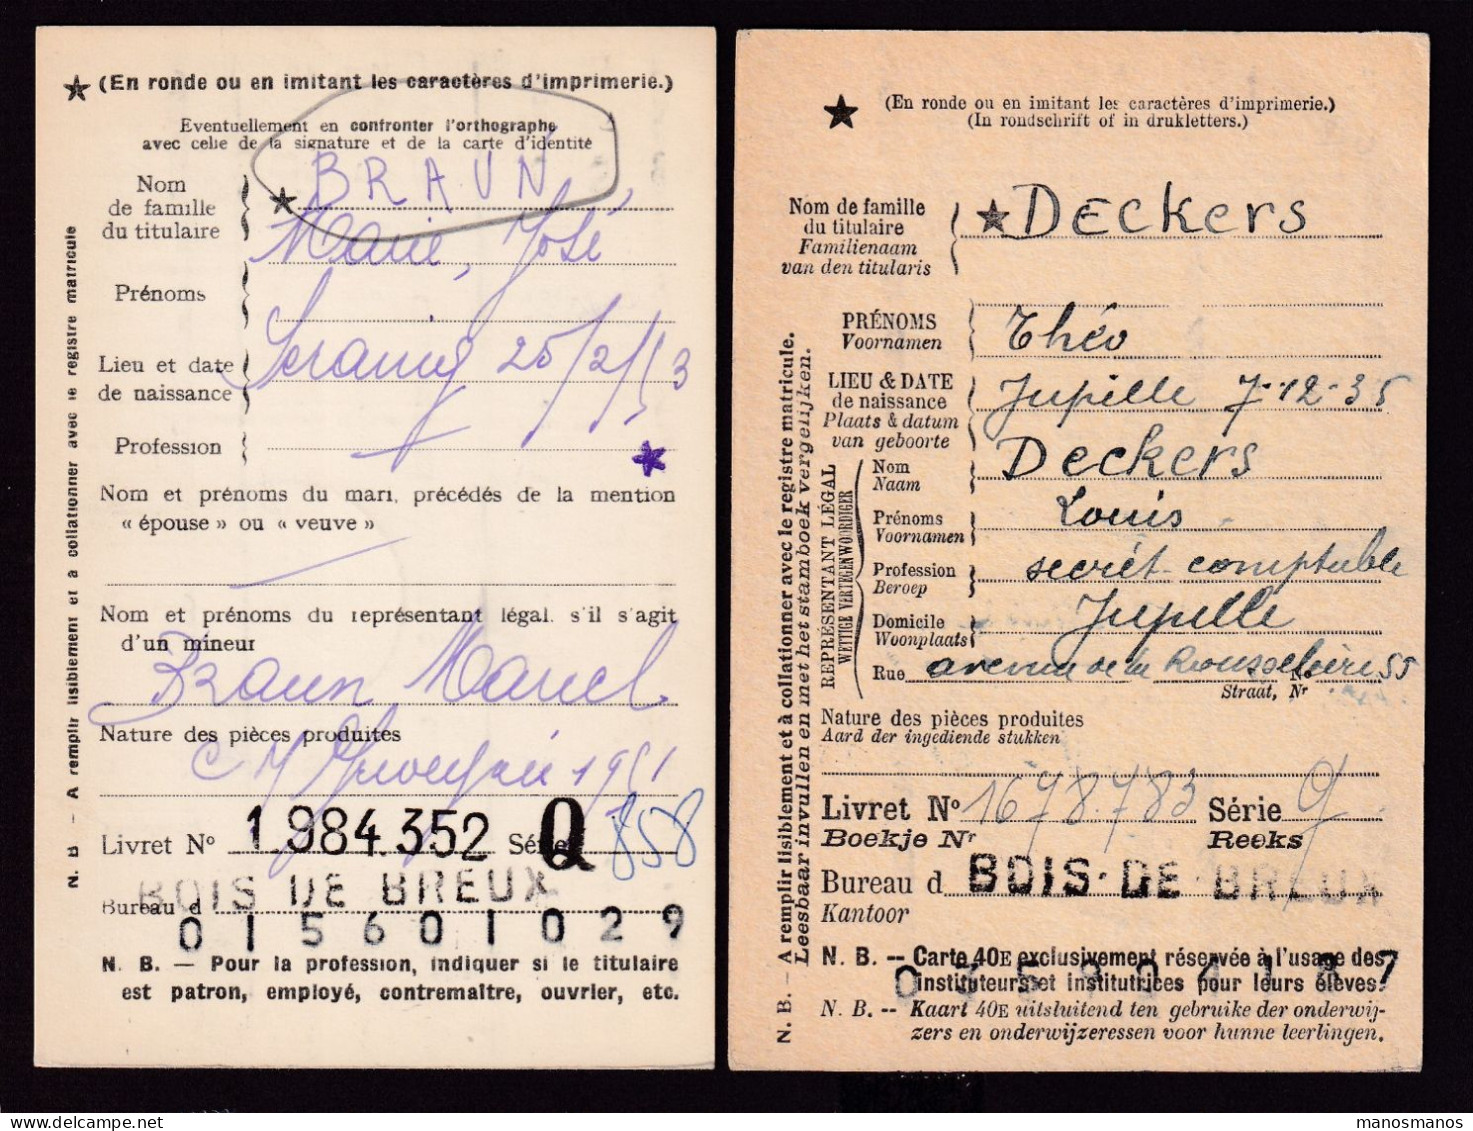 DDFF 554 -- BOIS DE BREUX - 2 X Carte De Caisse D'Epargne Postale/Postspaarkaskaart 1947/1953 - Grande Griffe - Franquicia